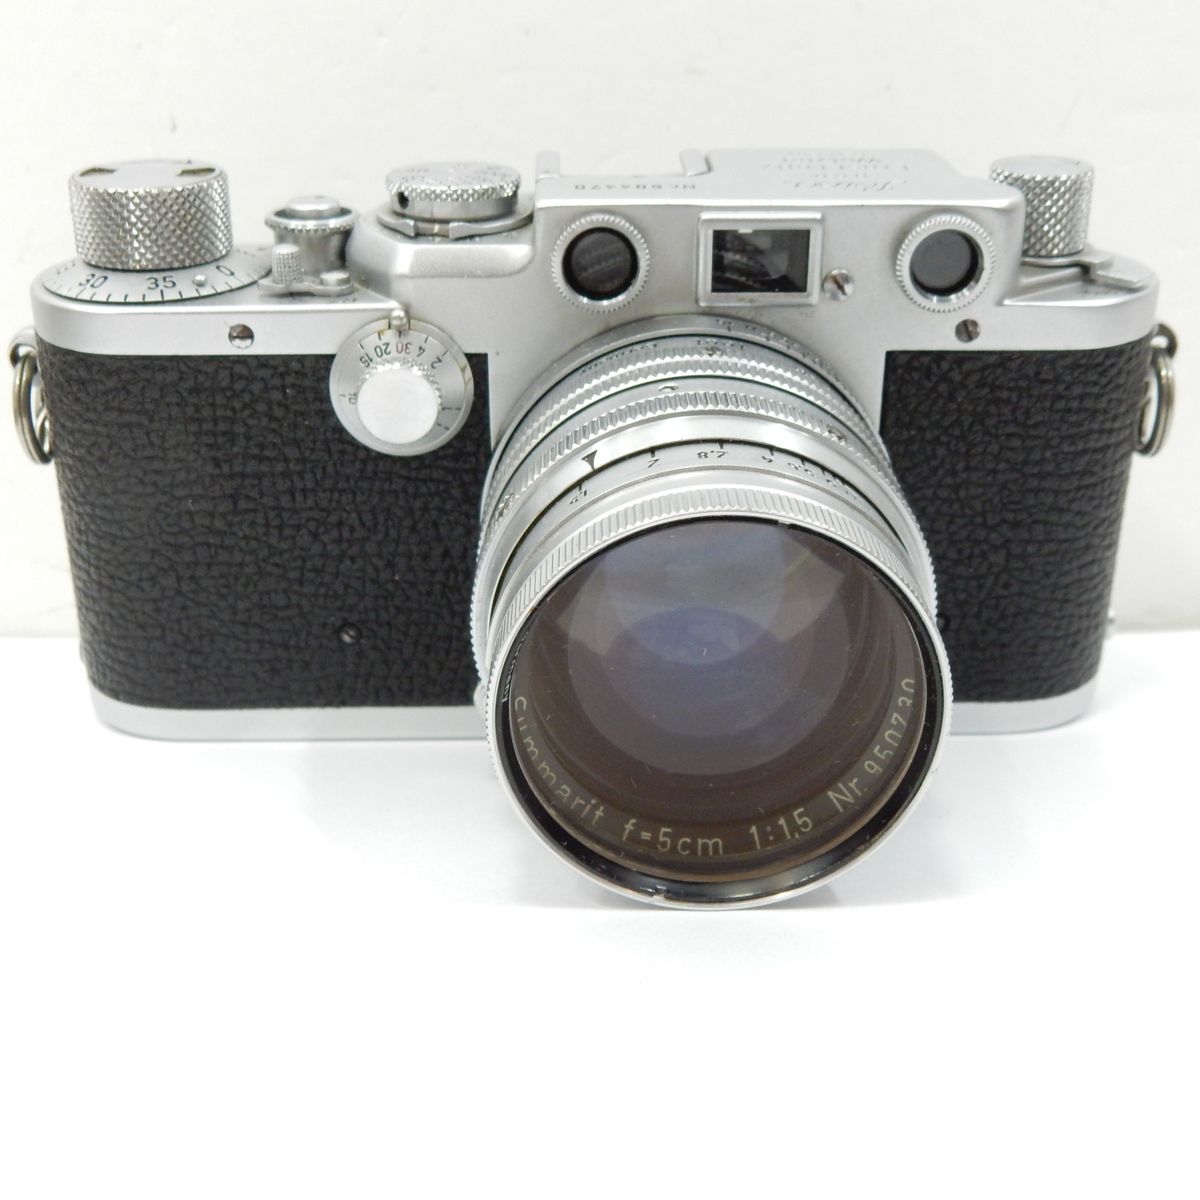 ライカ Leica D.R.P. Ernst Leitz Wetzlar フィルムカメラ レンズ Summarit f=5cm 1:1.5 シャッターのみ確認 他未確認 ジャンク扱い 4192_画像2